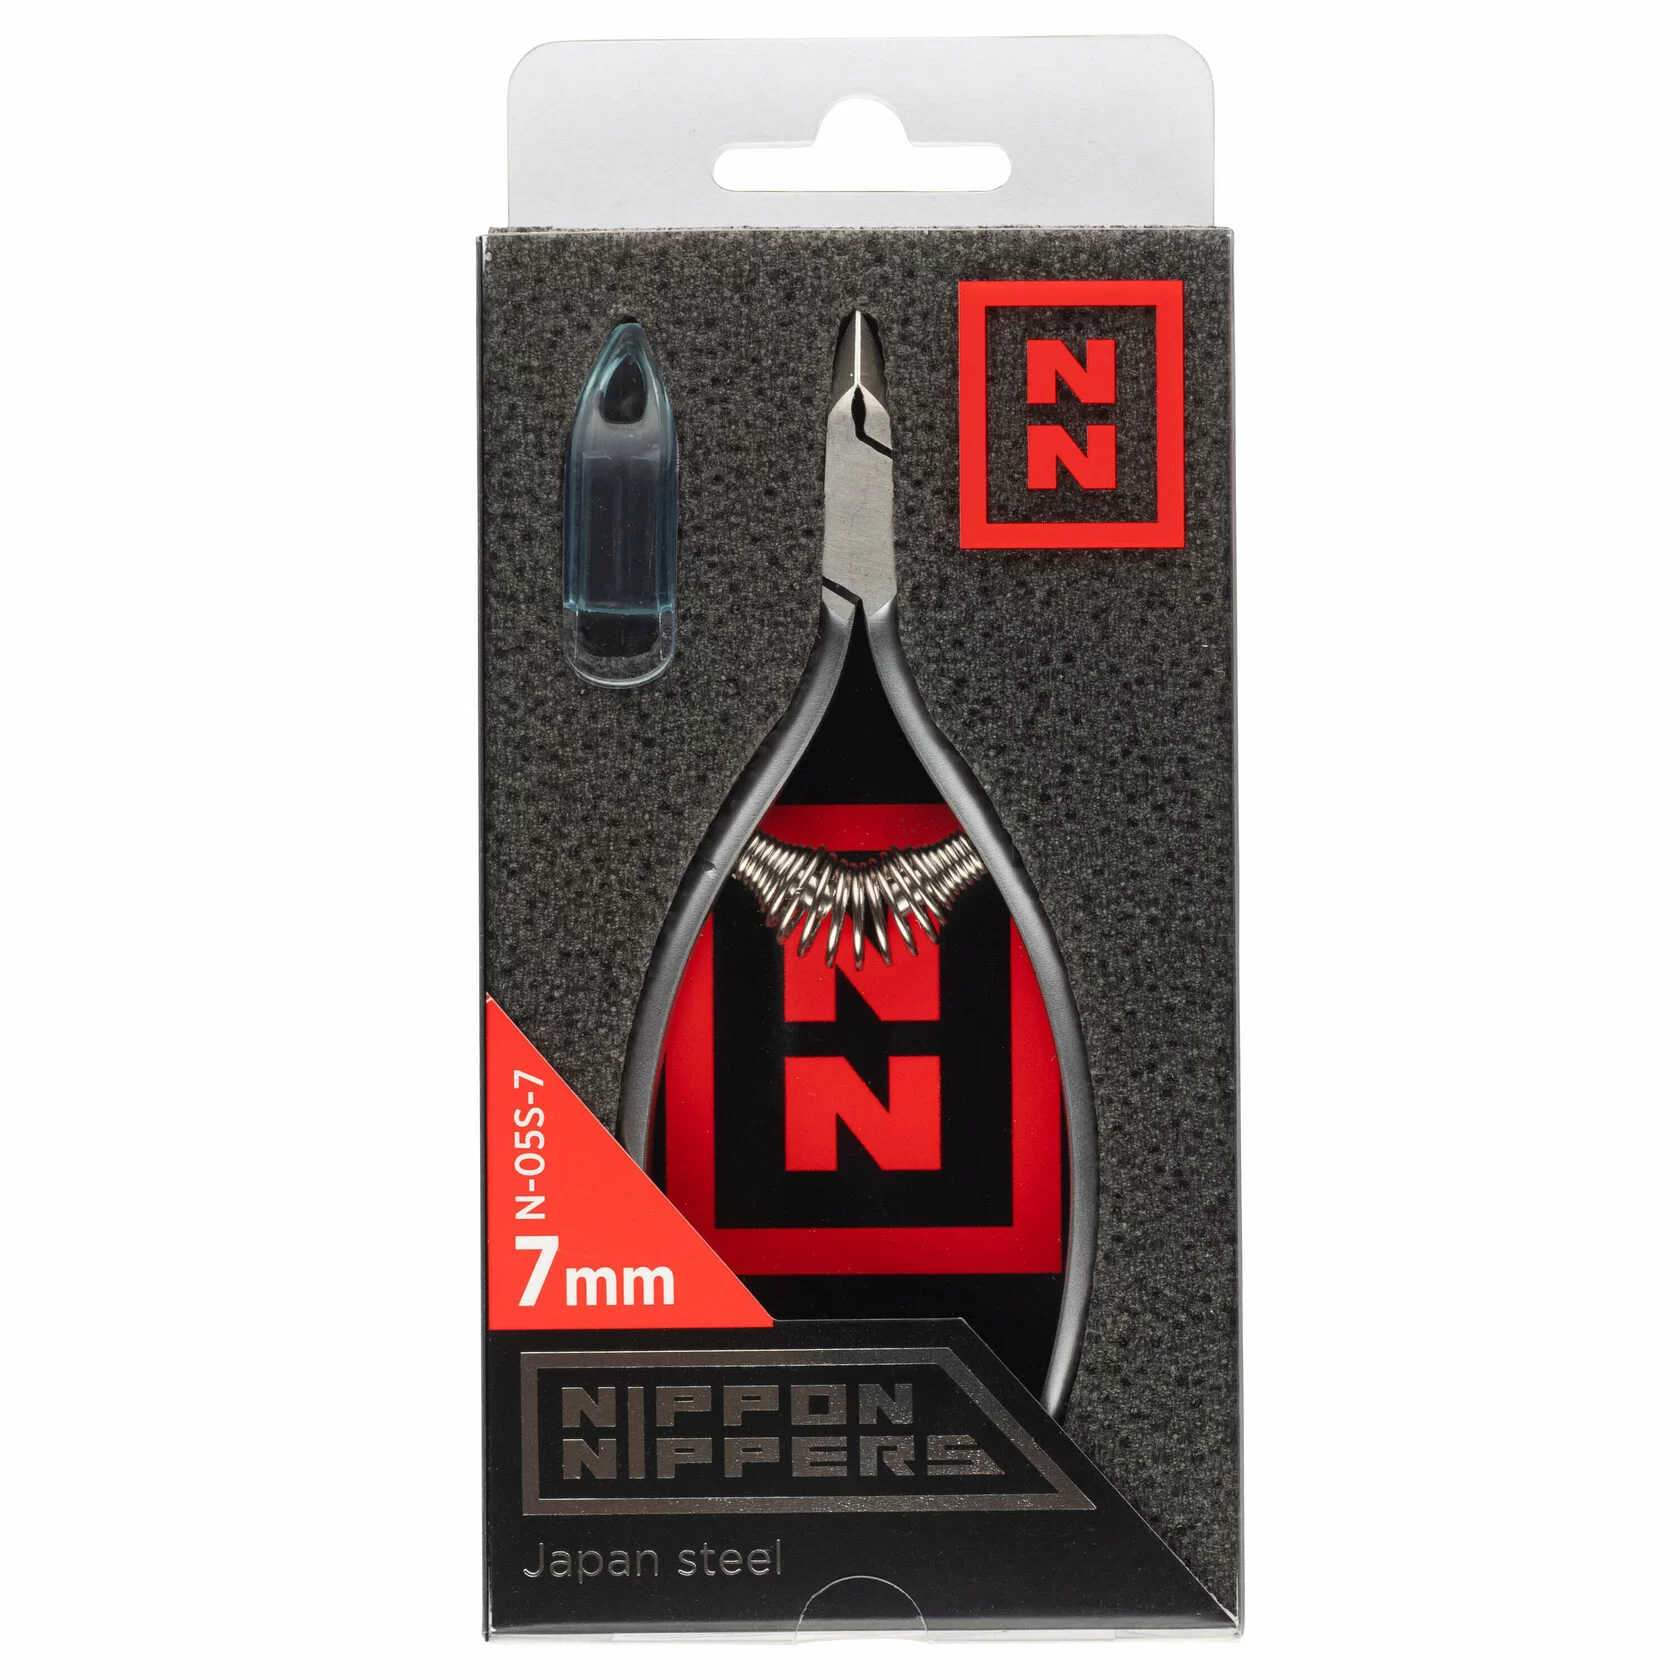 Кусачки Nippon Nippers N-05S-7 для кутикулы, (7мм) спиральная пружина, матовые. АКЦИЯ